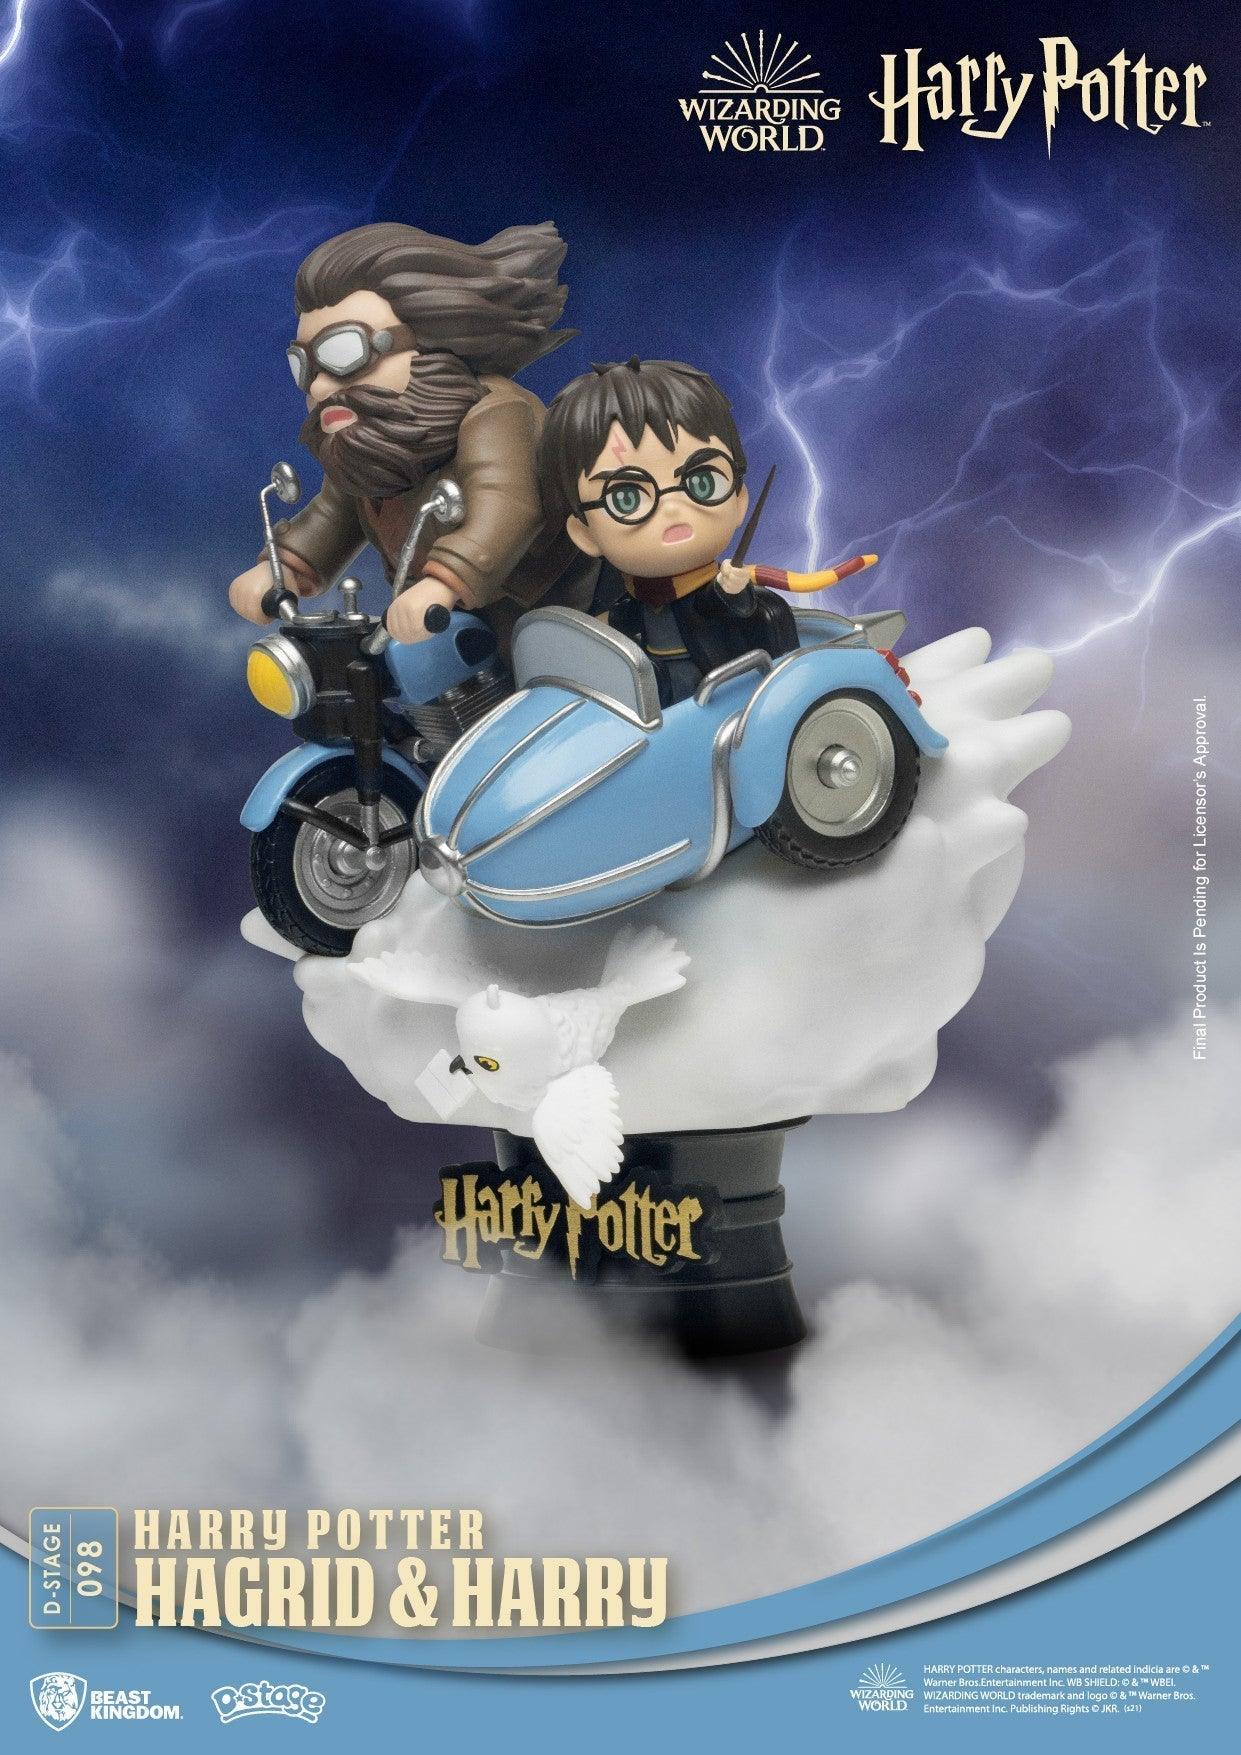 VR-94350 Beast Kingdom D Stage Harry Potter Hagrid and Harry Potter (Closed Box Packaging) - Beast Kingdom - Titan Pop Culture